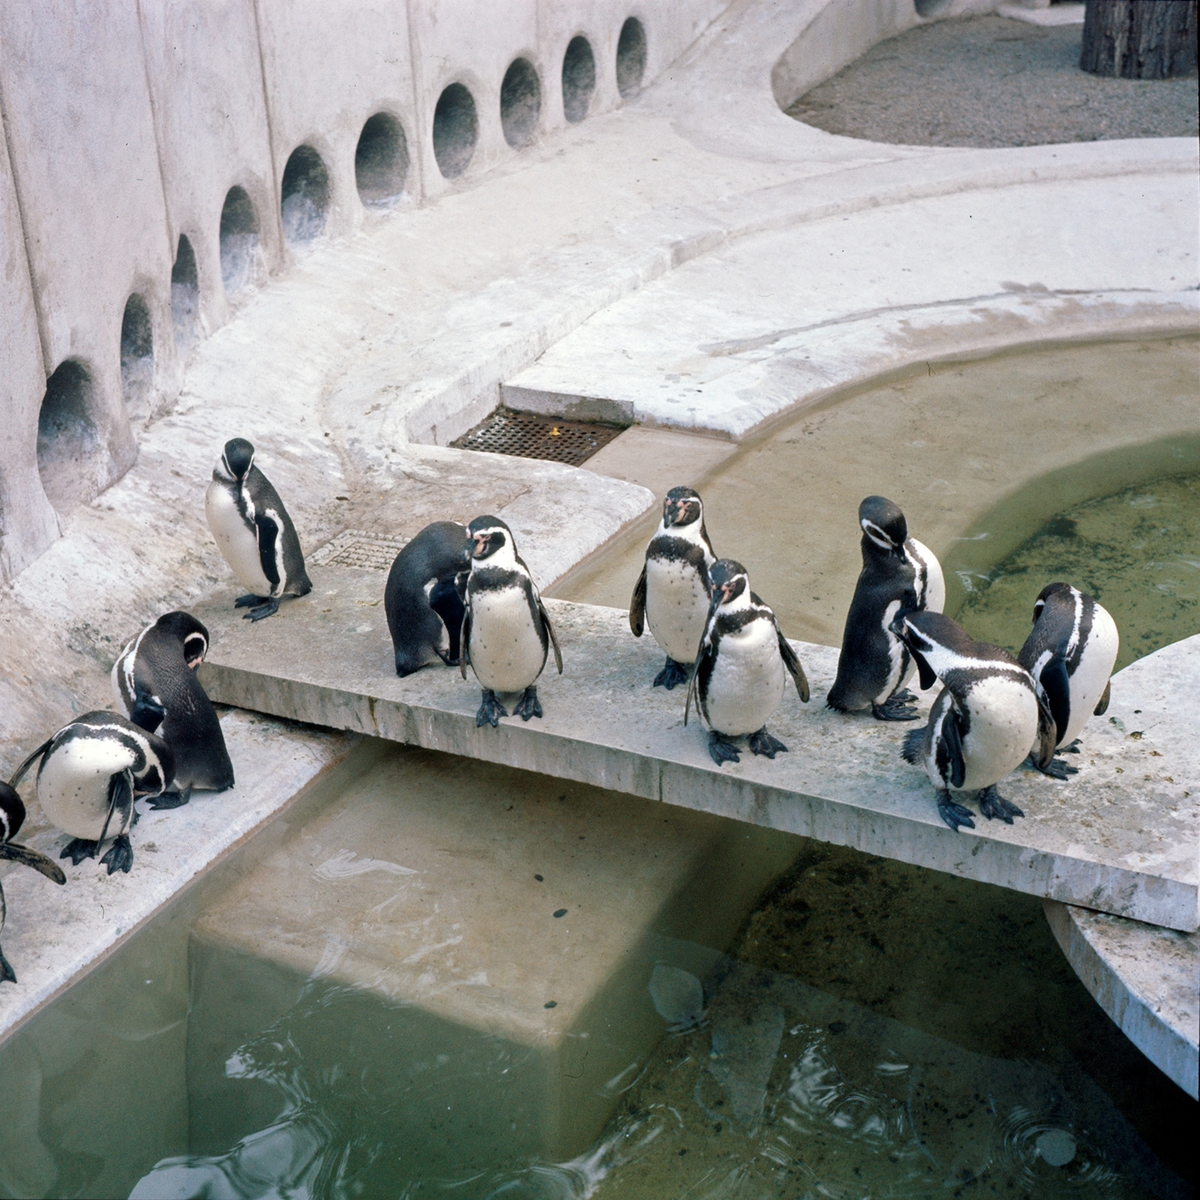 Pingviner på Skansen.
Humboldtpingviner (Spheniscus humboldti). Anläggningen invigdes i maj 1963, och var ritad av stadsträdgårdsmästare Holger Blom. För övrigt den första anläggningen i Europa med undervattensfönster till sjölejon och pingviner.